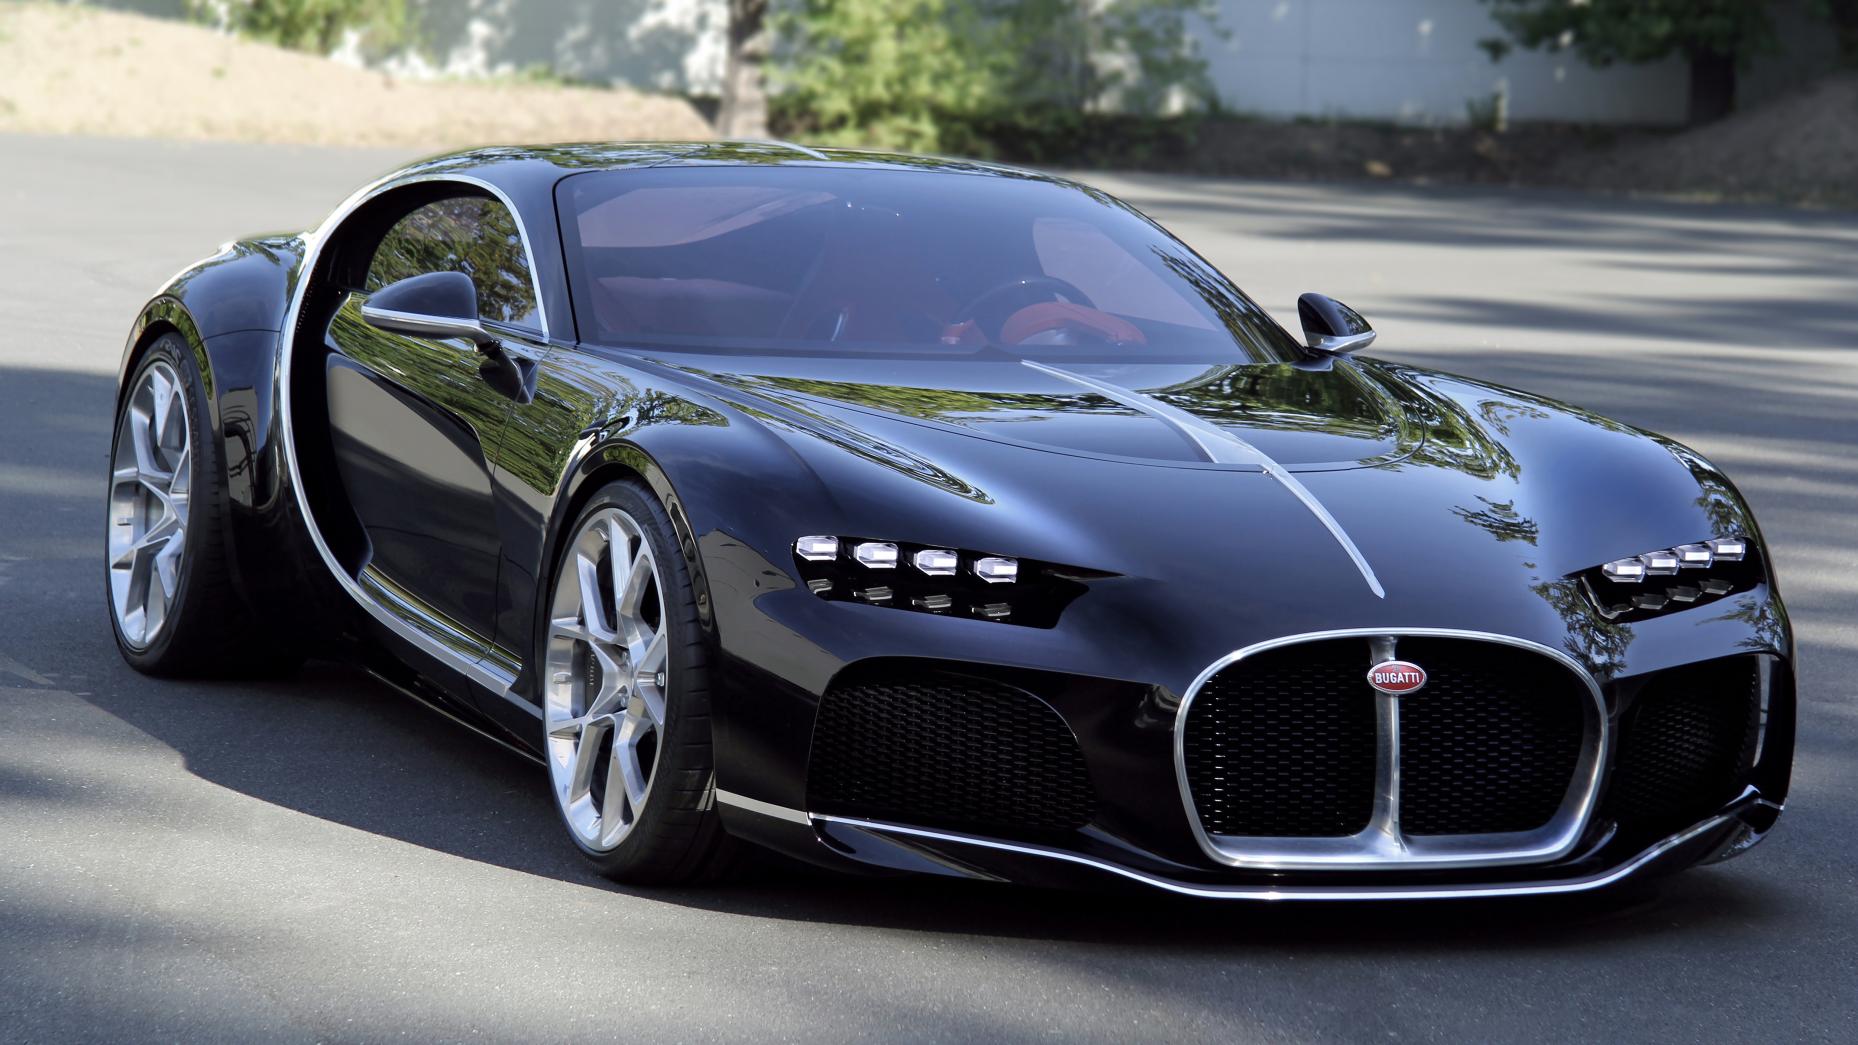 TopGear | Gallery: These are Bugatti’s secret concept cars